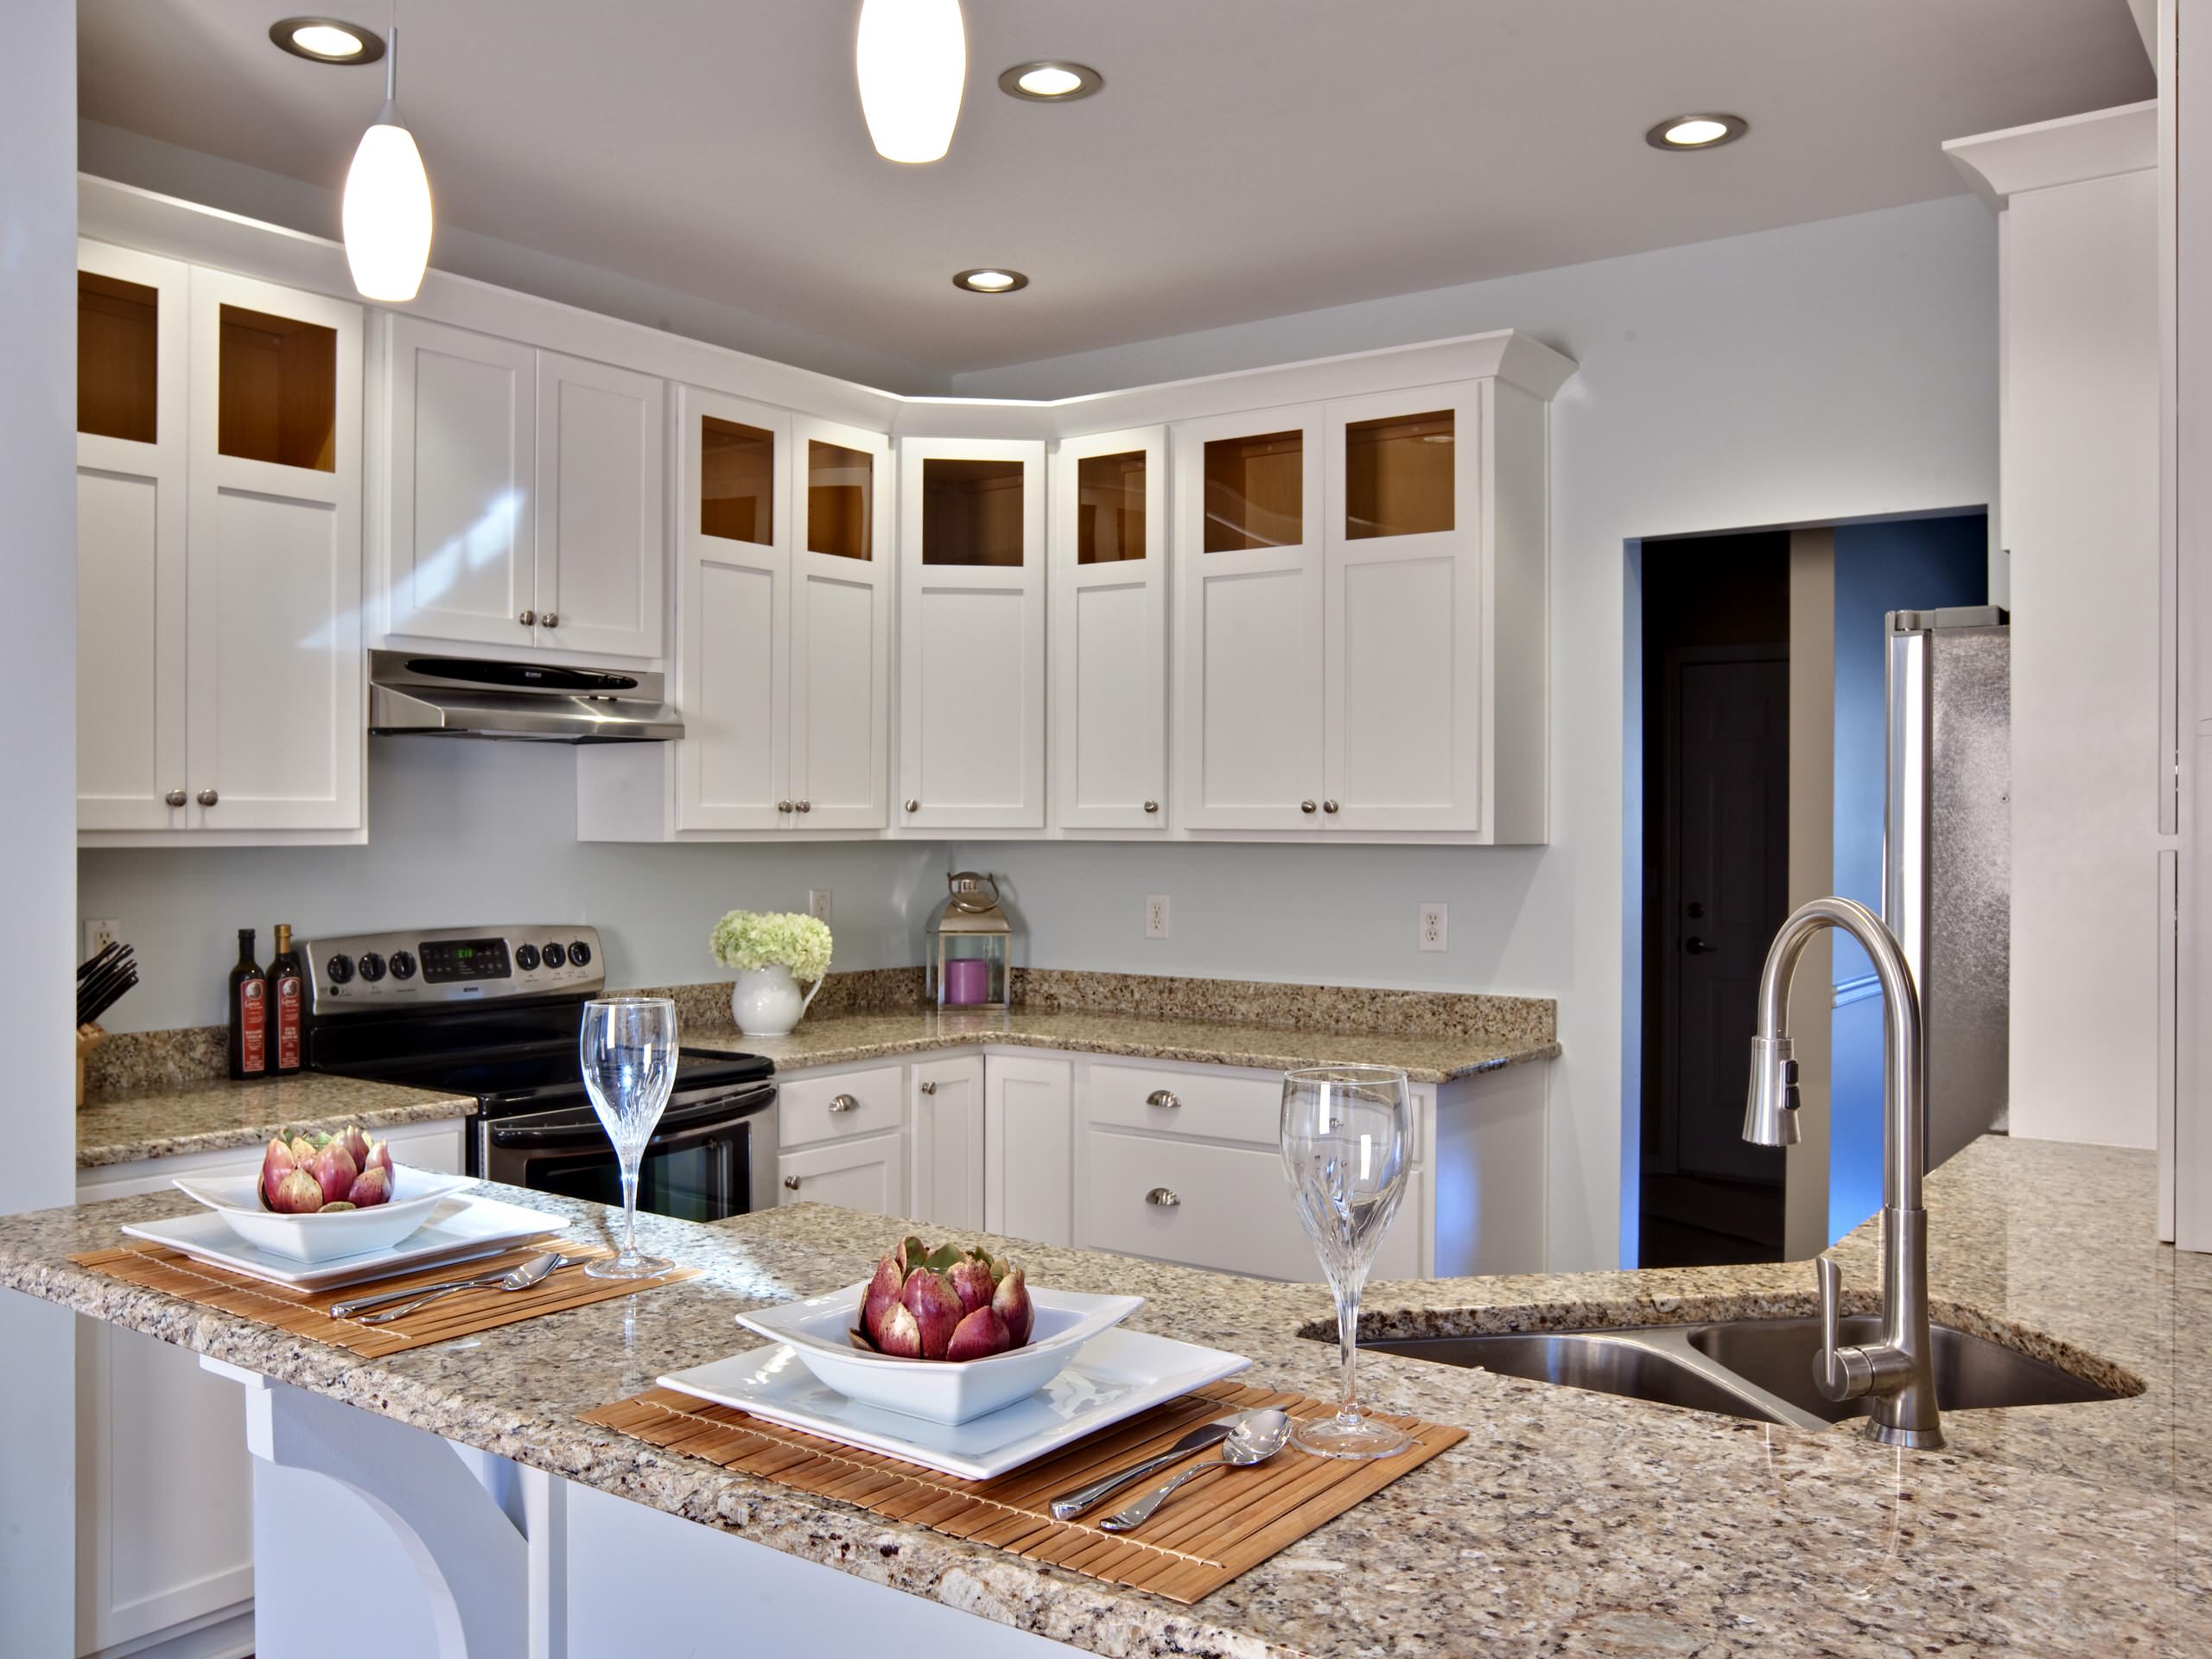 Kitchen With Granite Backsplash Ideas